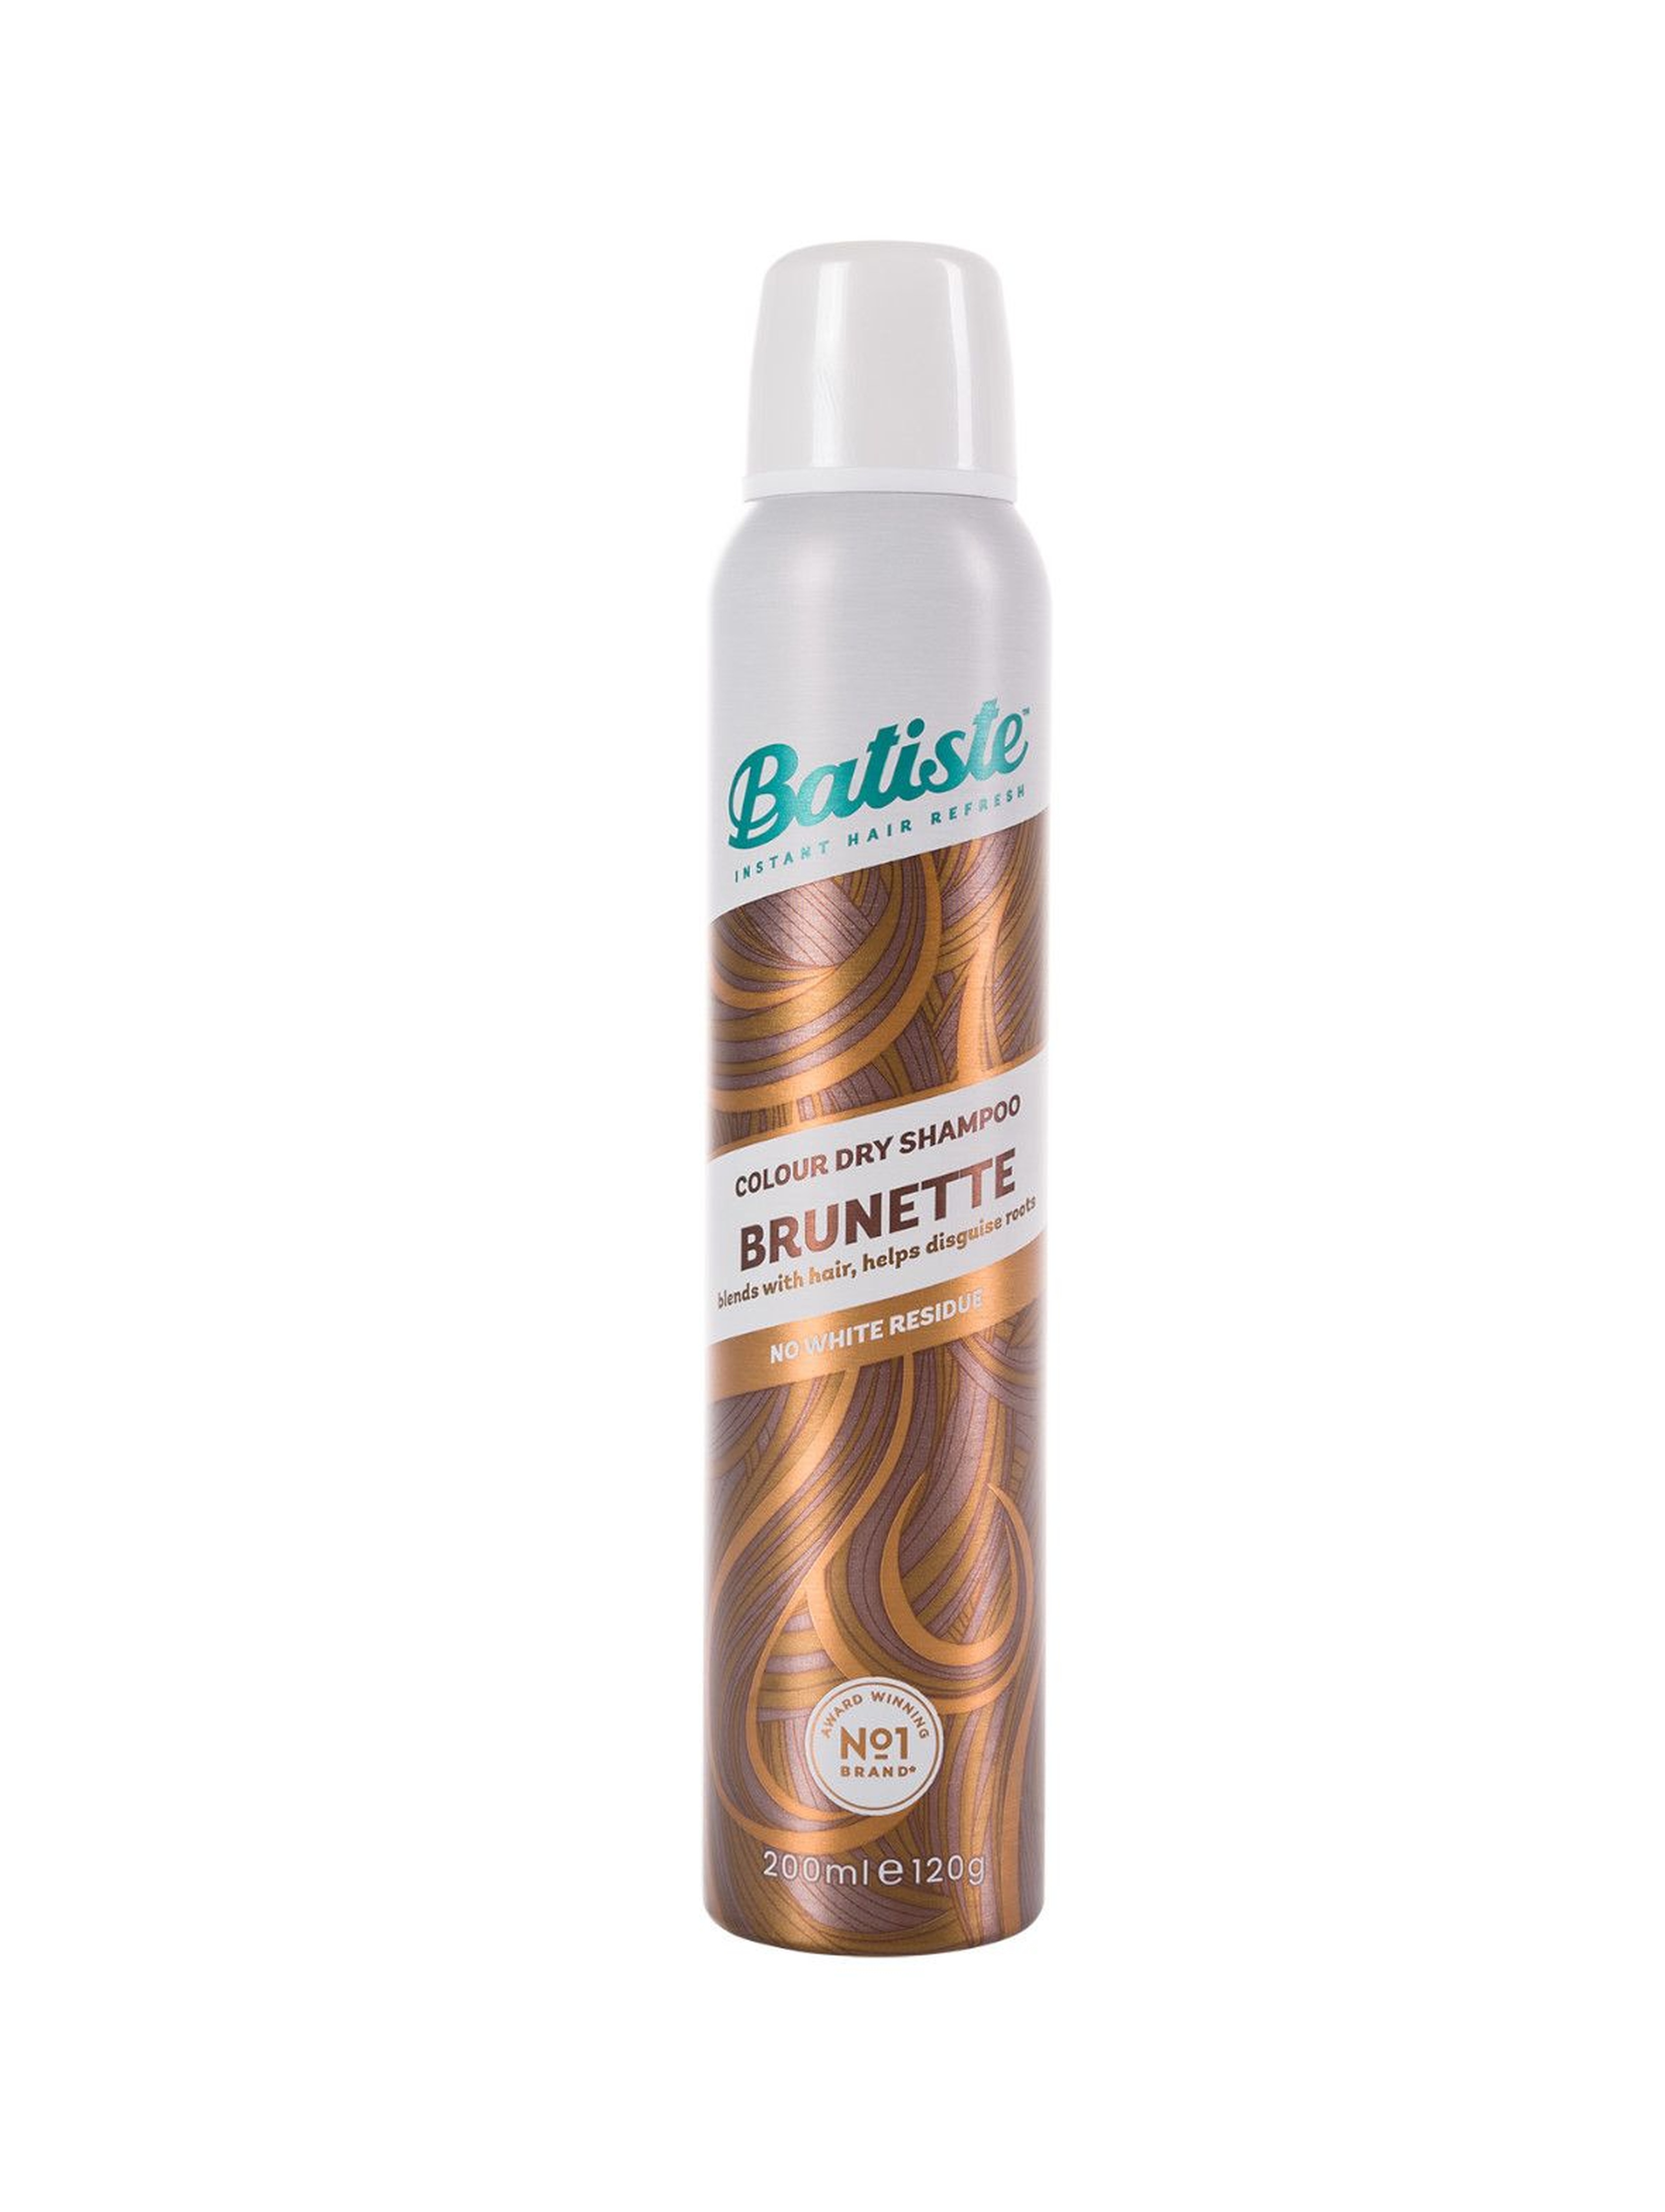 BATISTE – BRUNETTE suchy szampon do włosów 200 ml